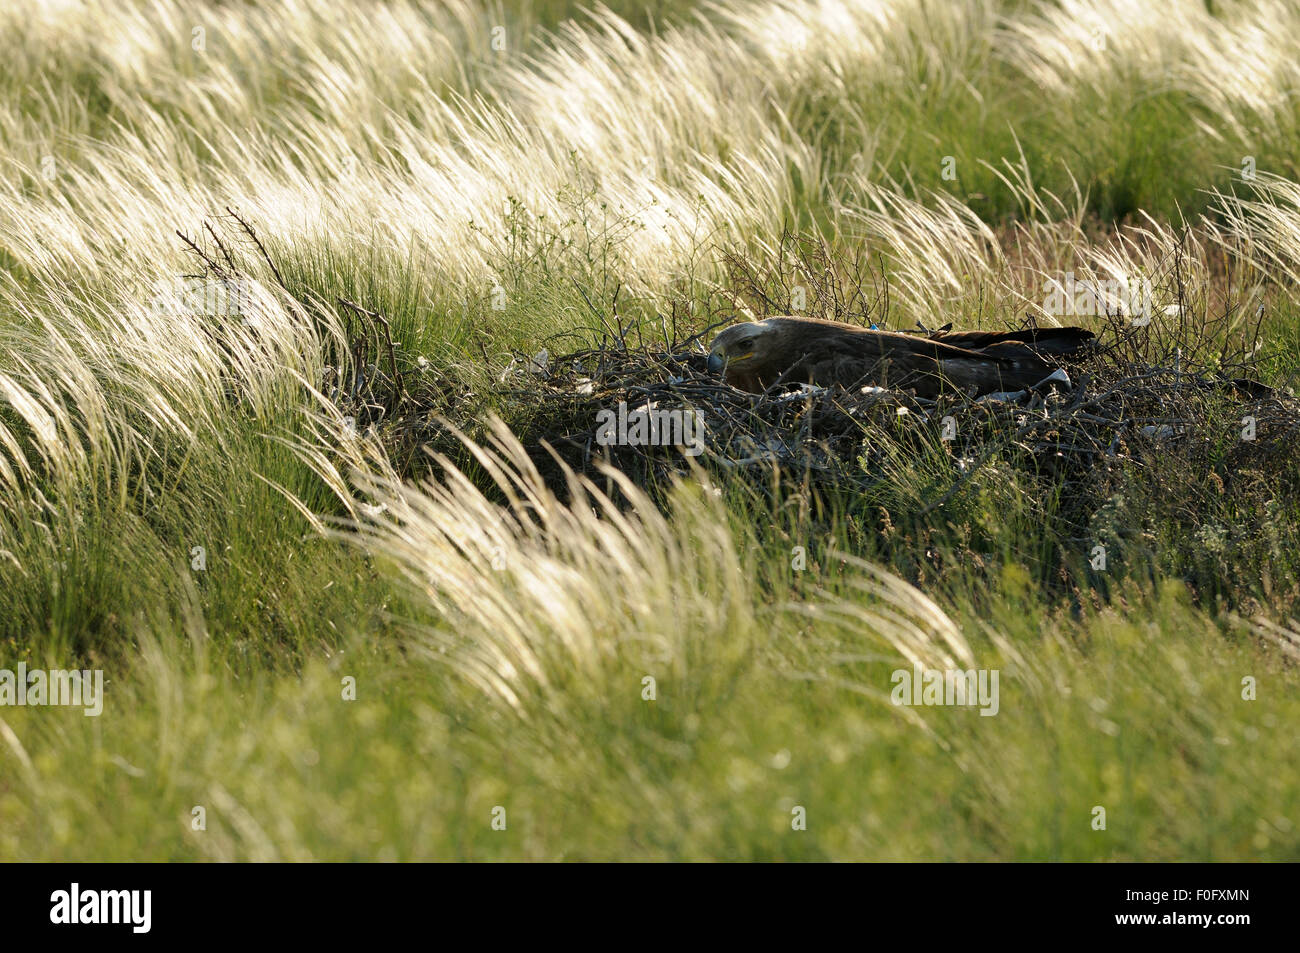 L'aigle des steppes (Aquila nipalensis) sur son nid, Cherniye zemli (terre noire), Réserve naturelle de Kalmoukie, en Russie, en mai 2009 Banque D'Images